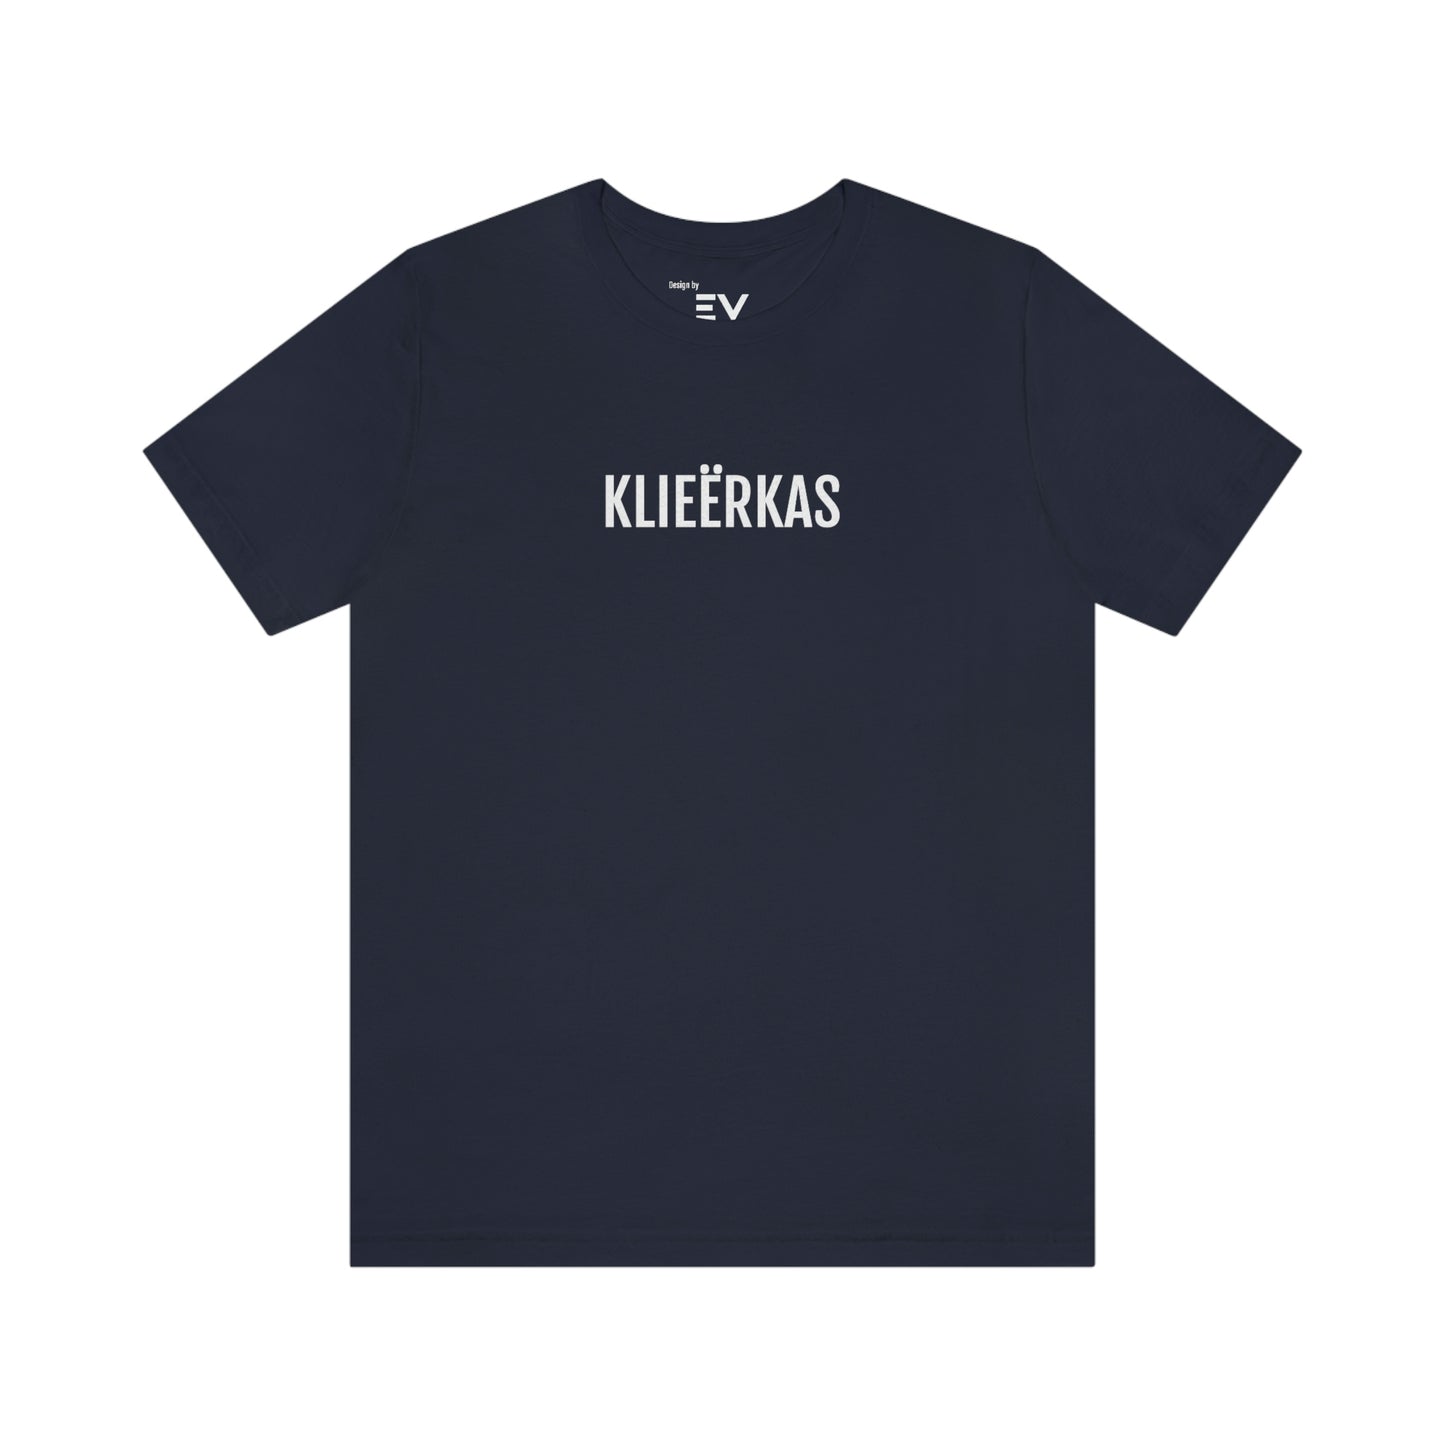 Klieërkas | Mannen T-Shirt uit Antwerpen - Marine blauw